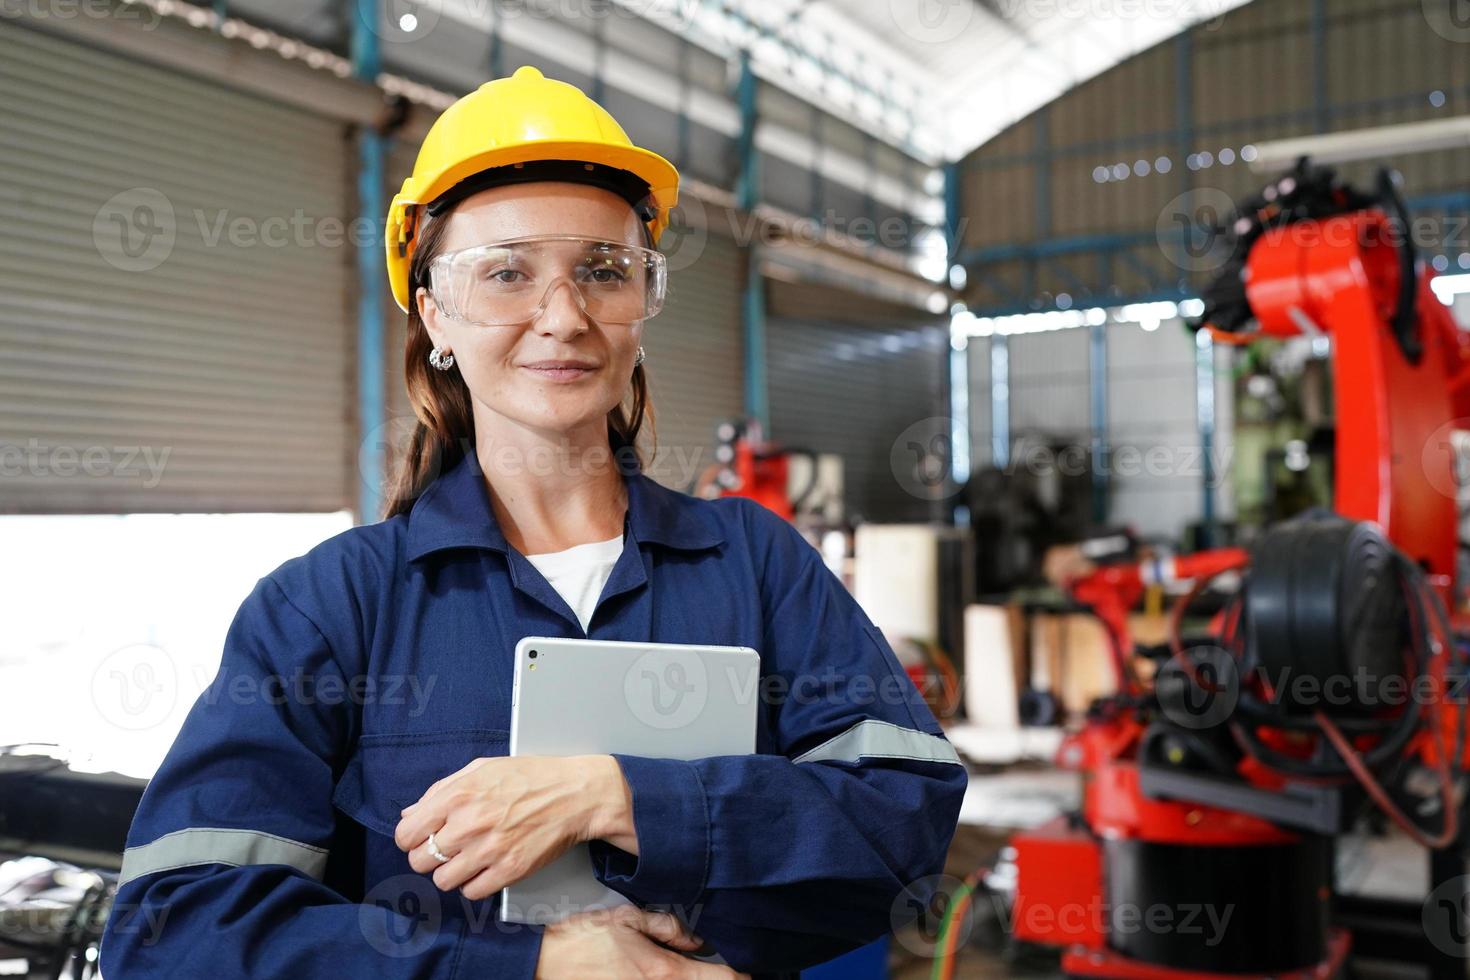 vrouwelijke empowerment, werkende vrouwelijke industriearbeider of ingenieurvrouw die in een industriële productiefabriek werkt. foto